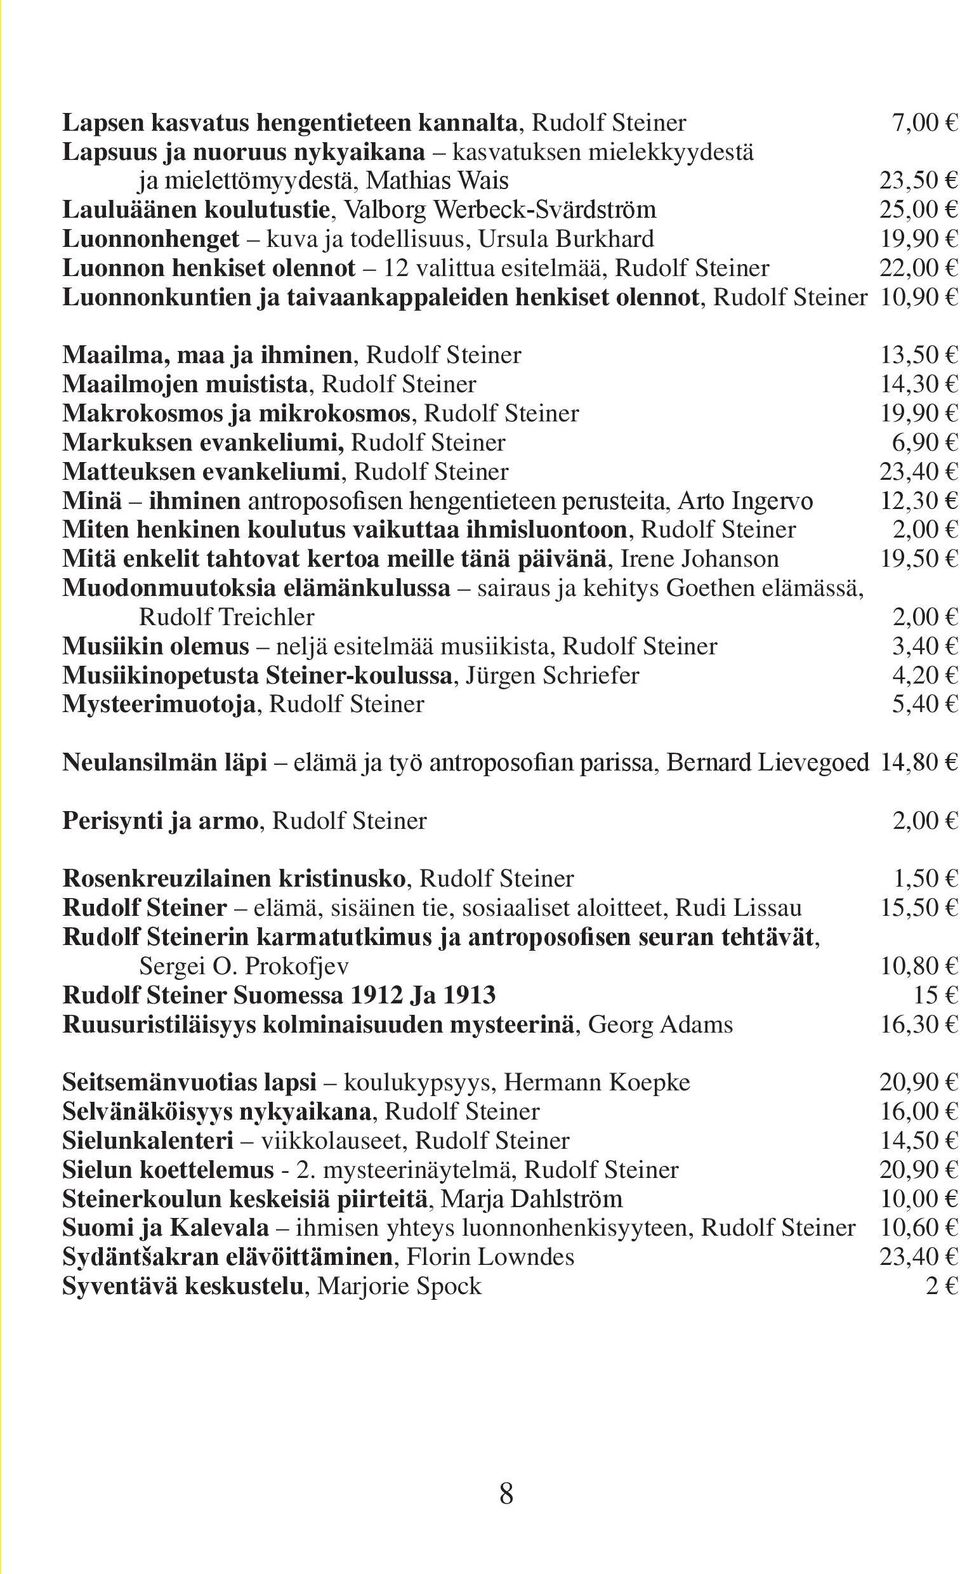 olennot, Rudolf Steiner 10,90 Maailma, maa ja ihminen, Rudolf Steiner 13,50 Maailmojen muistista, Rudolf Steiner 14,30 Makrokosmos ja mikrokosmos, Rudolf Steiner 19,90 Markuksen evankeliumi, Rudolf